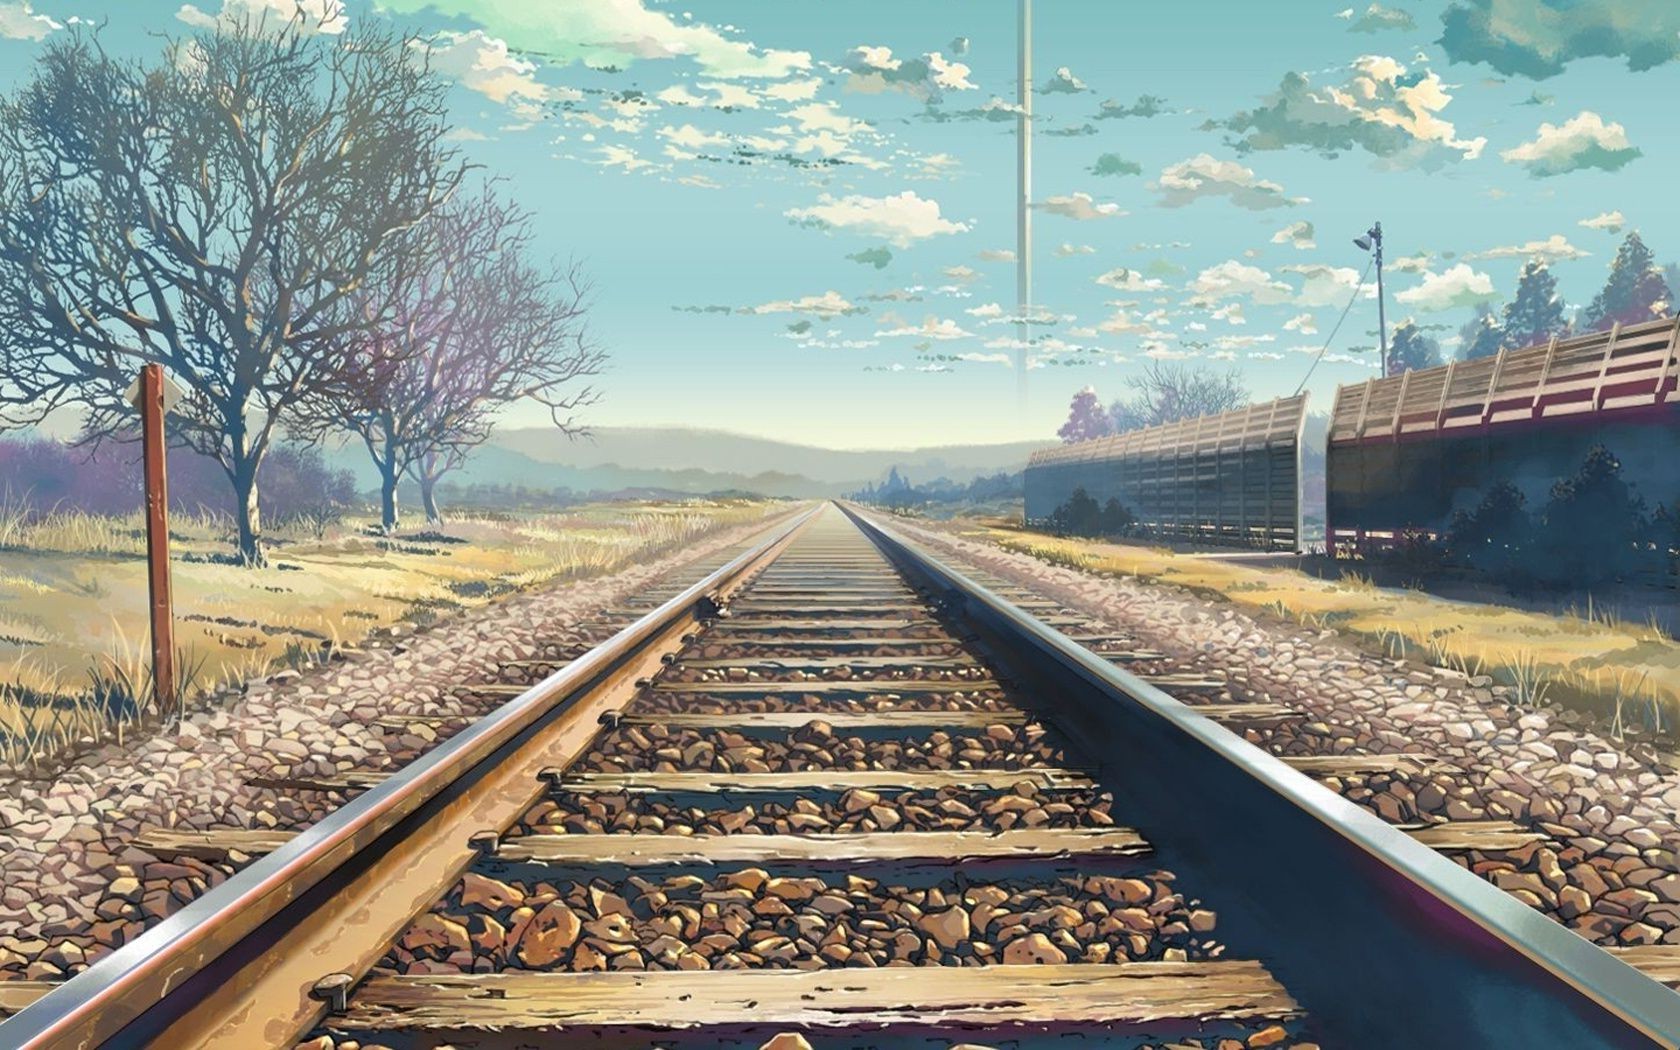 пейзажи железнодорожный поезд транспортная система трек путешествия дорога руководство небо гравий на открытом воздухе перспективы линия пейзаж дневной свет долго сталь